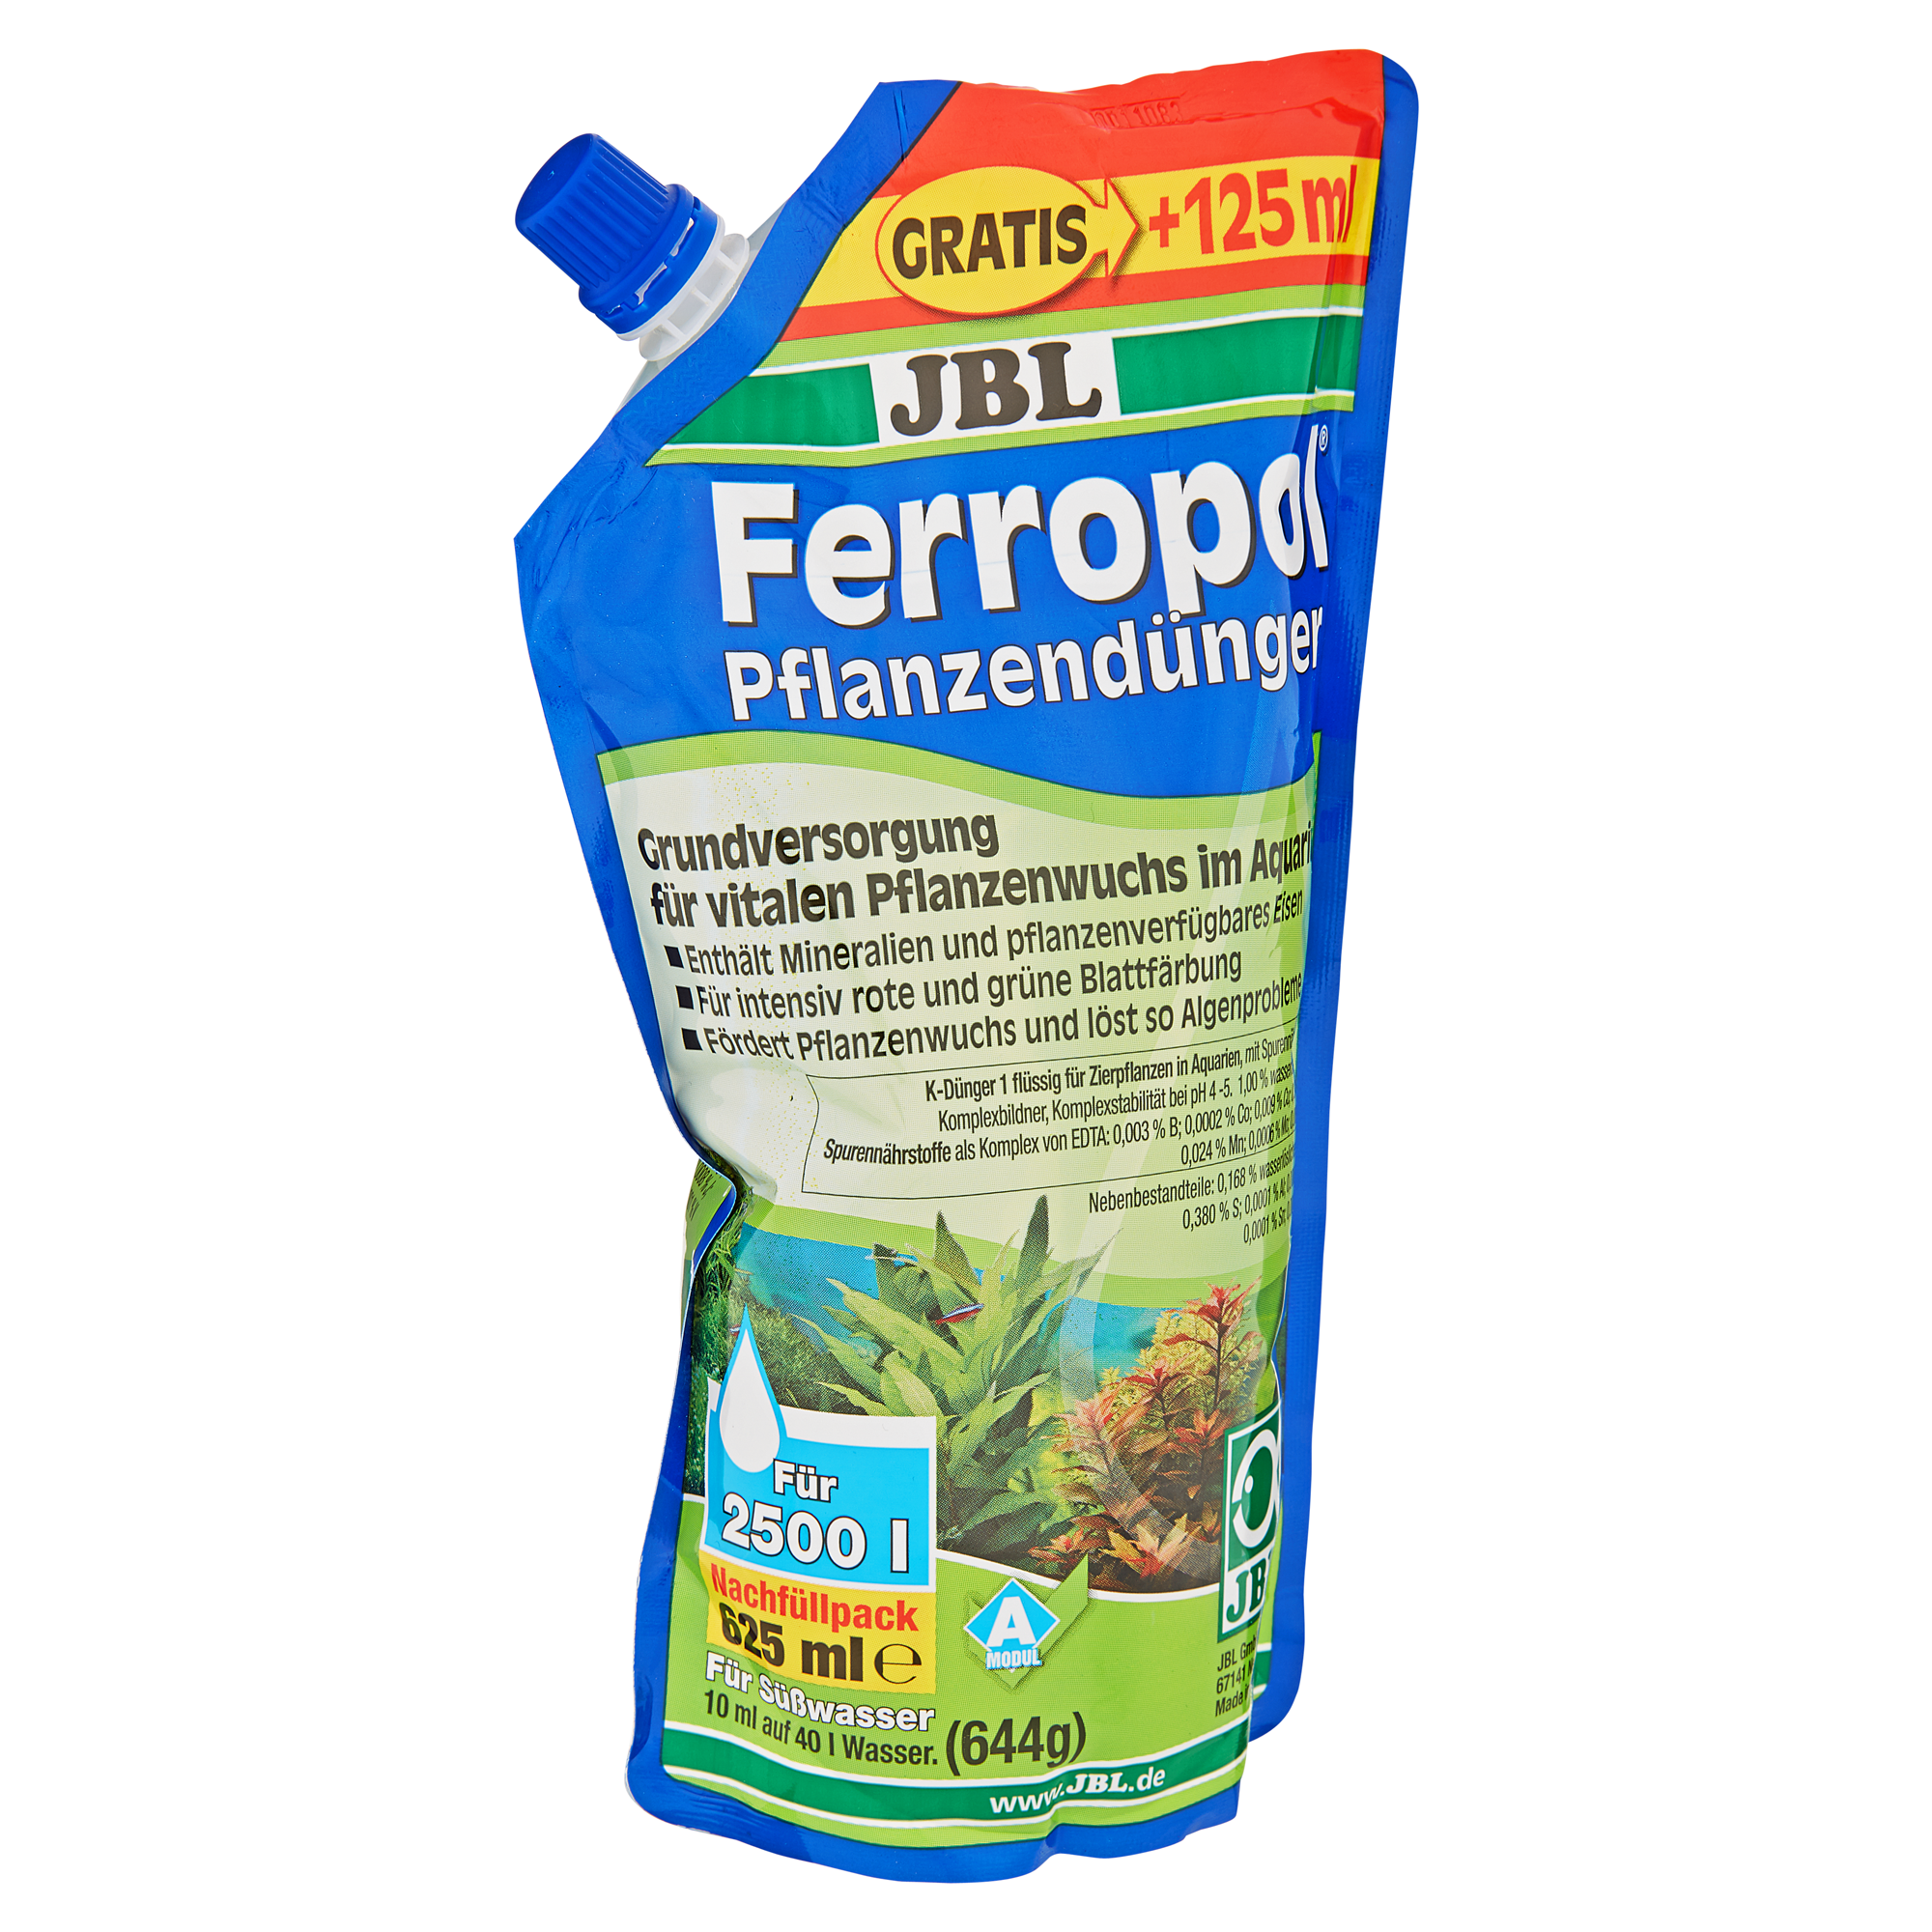 Pflanzendünger "Ferropol" Nachfüllpack 625 ml + product picture